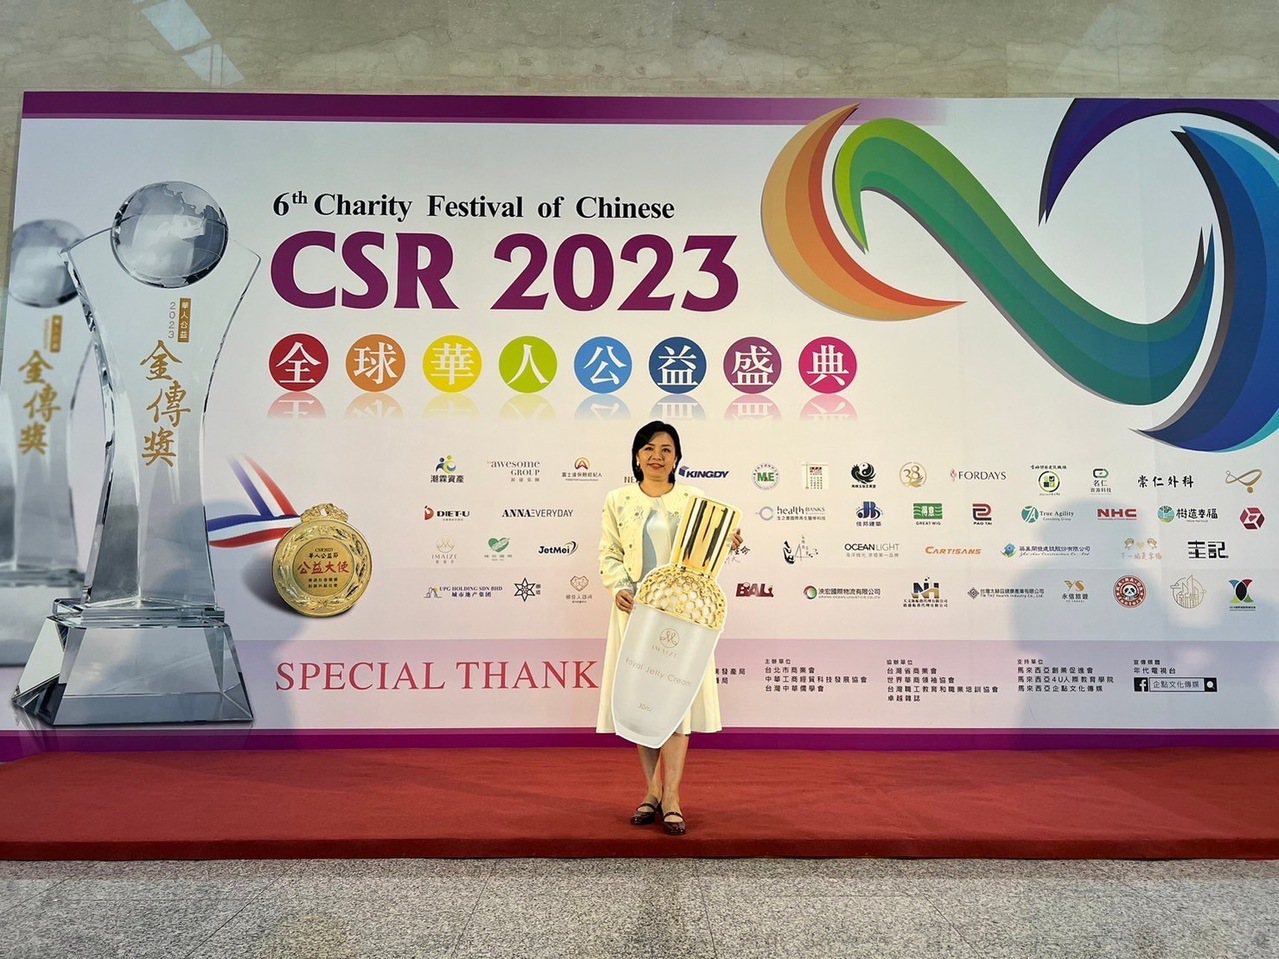 業者獲得CSR 2023年全球華人公益盛典金傳獎  (照片/由美澤生活事業有限公司提供)
IMAIZE 嬡妹籽/攤位A0116